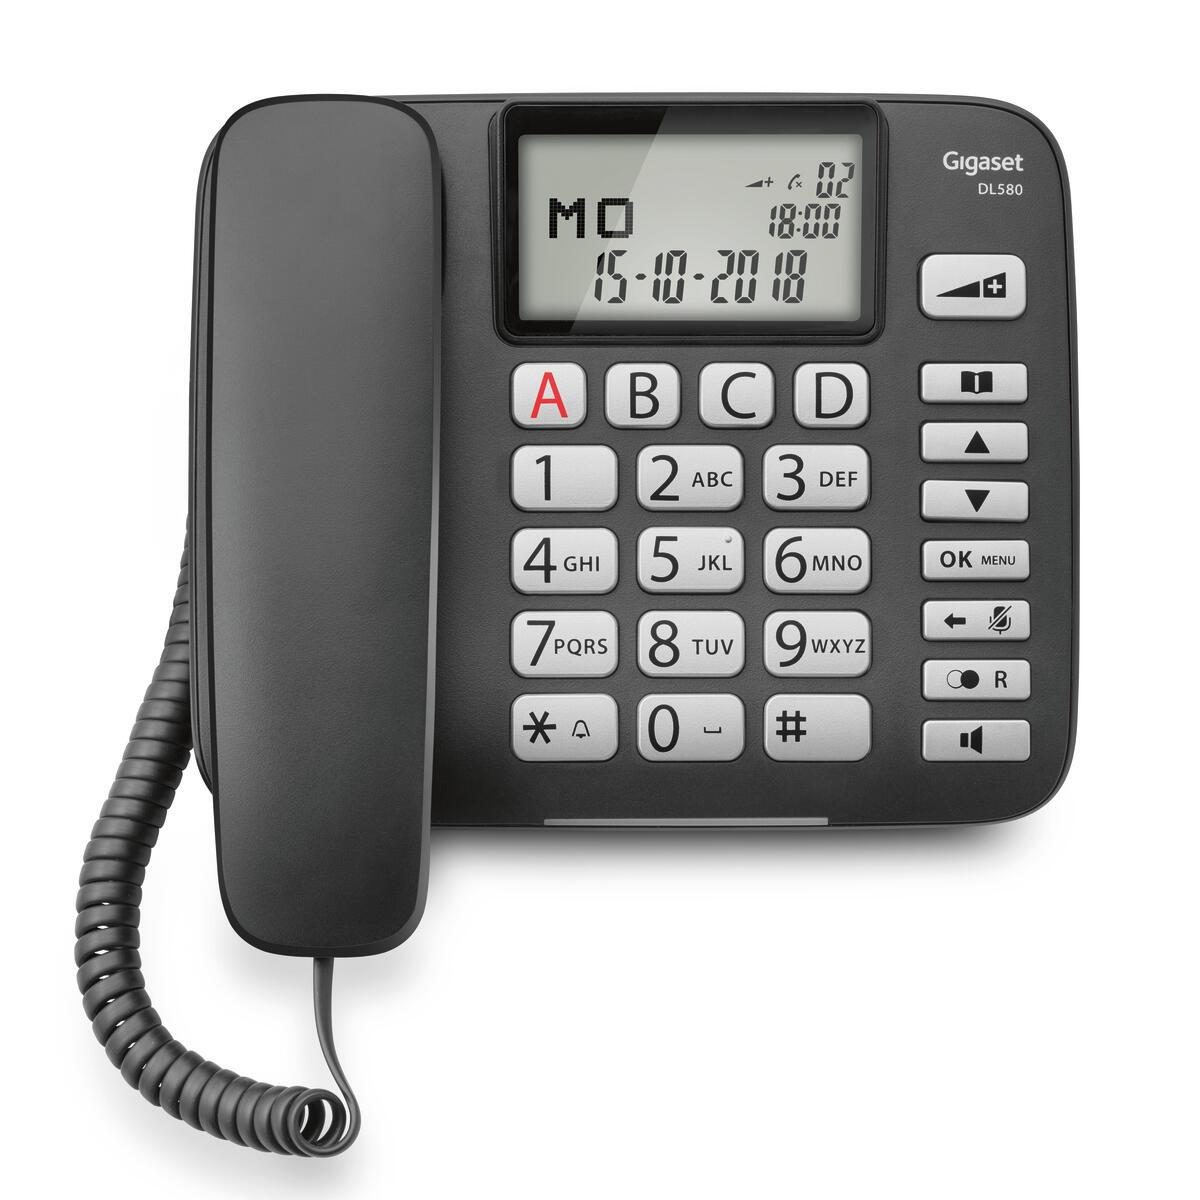 Gigaset DL580 Komfort-Telefon mit großen Tasten und beleuchtetem Display - sc...